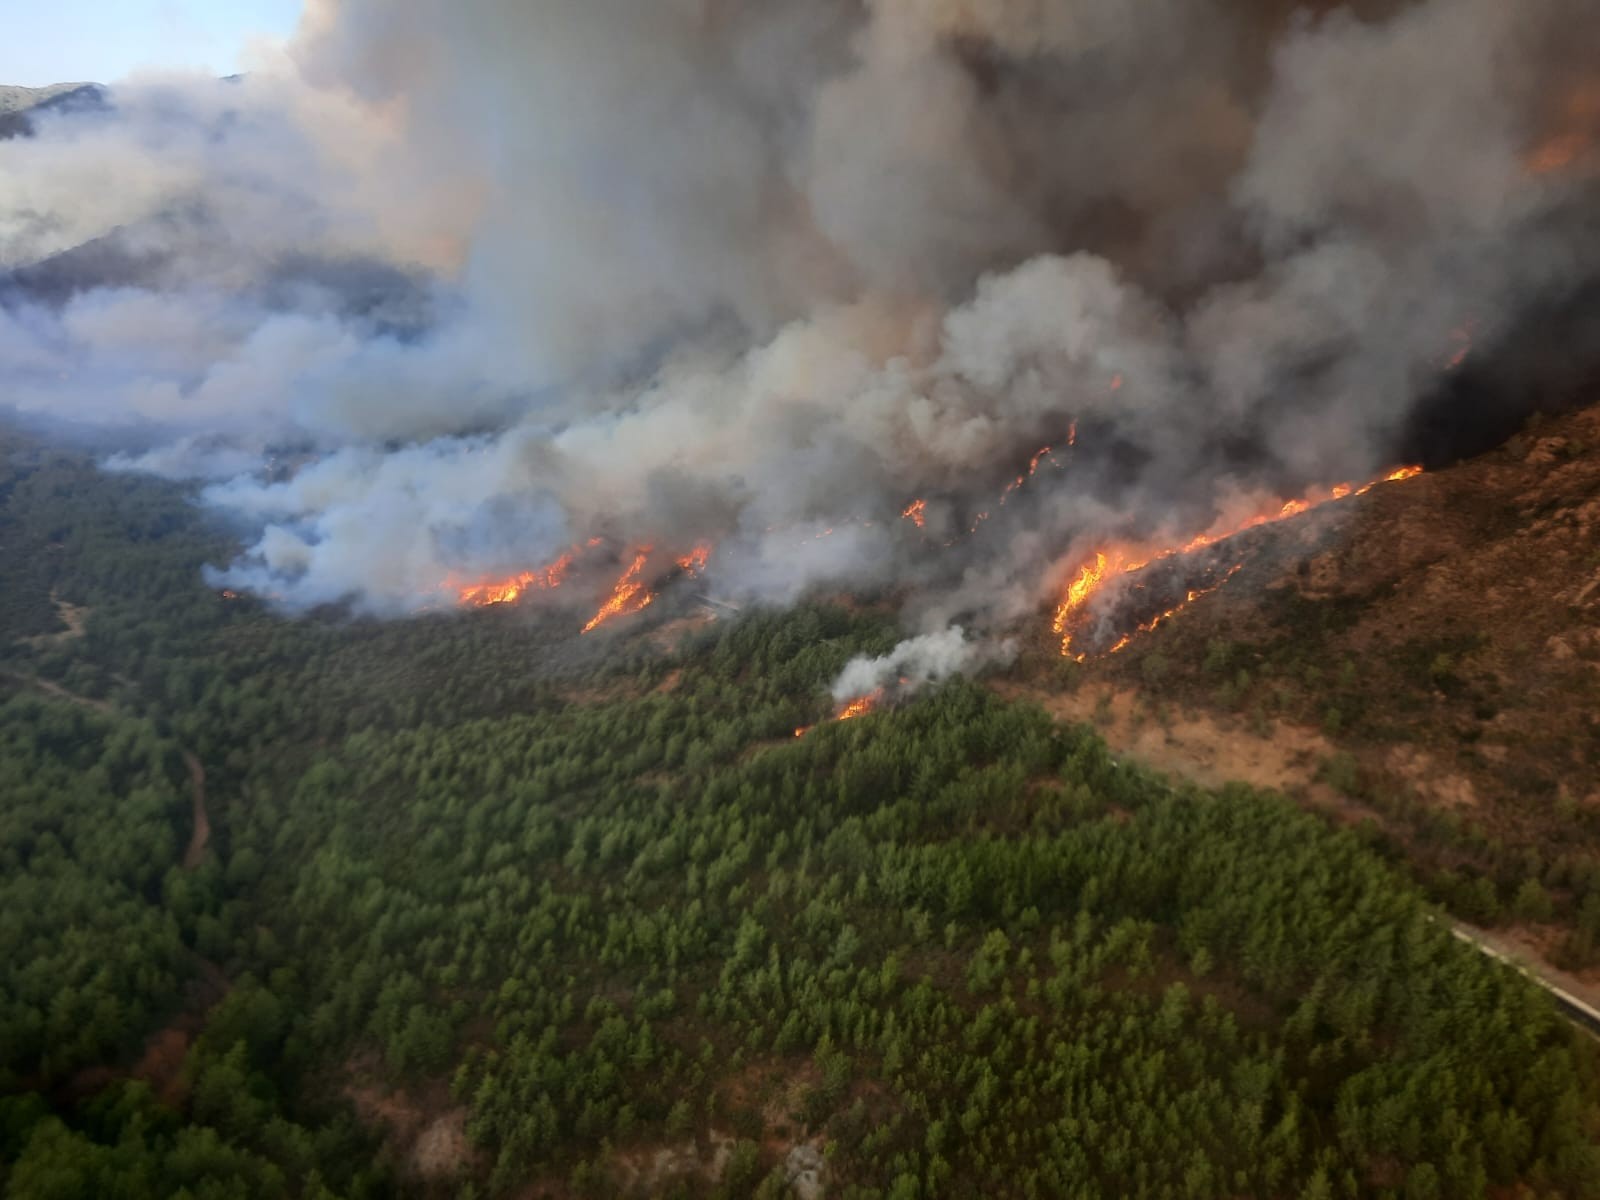 SON DAKİKA! Marmaris’te orman yangını! Yangına havadan ve karadan müdahale ediliyor 